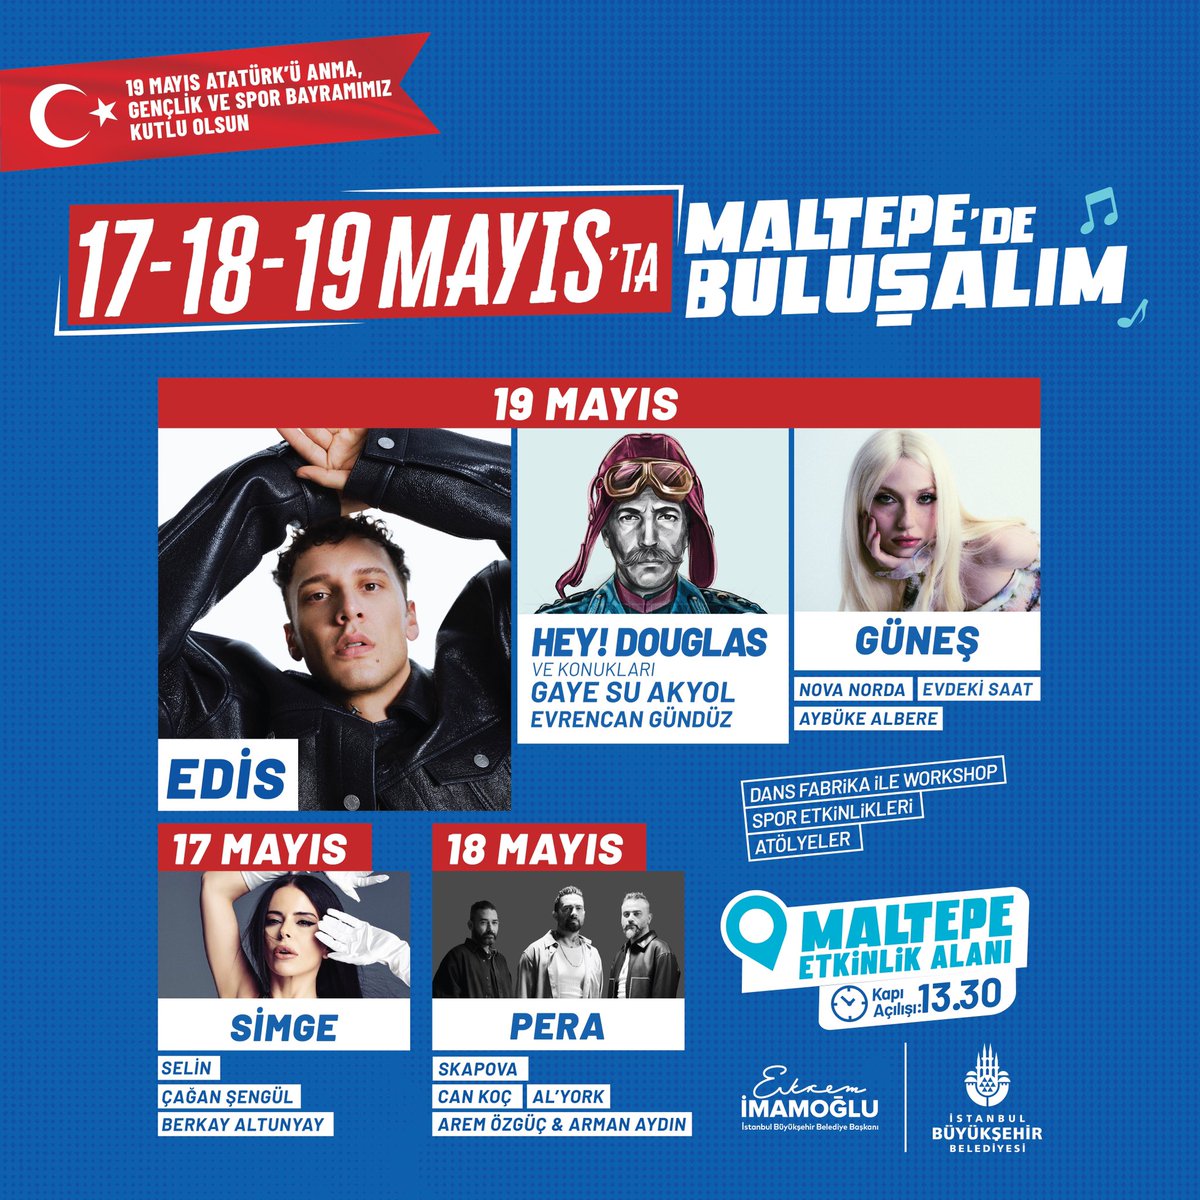 19 Mayıs Atatürk’ü Anma, Gençlik ve Spor Bayramımız kutlu olsun! 19 Mayıs kutlamalarında Maltepe’de buluşalım! 📅 17-18-19 Mayıs 📌 Maltepe Etkinlik Alanı